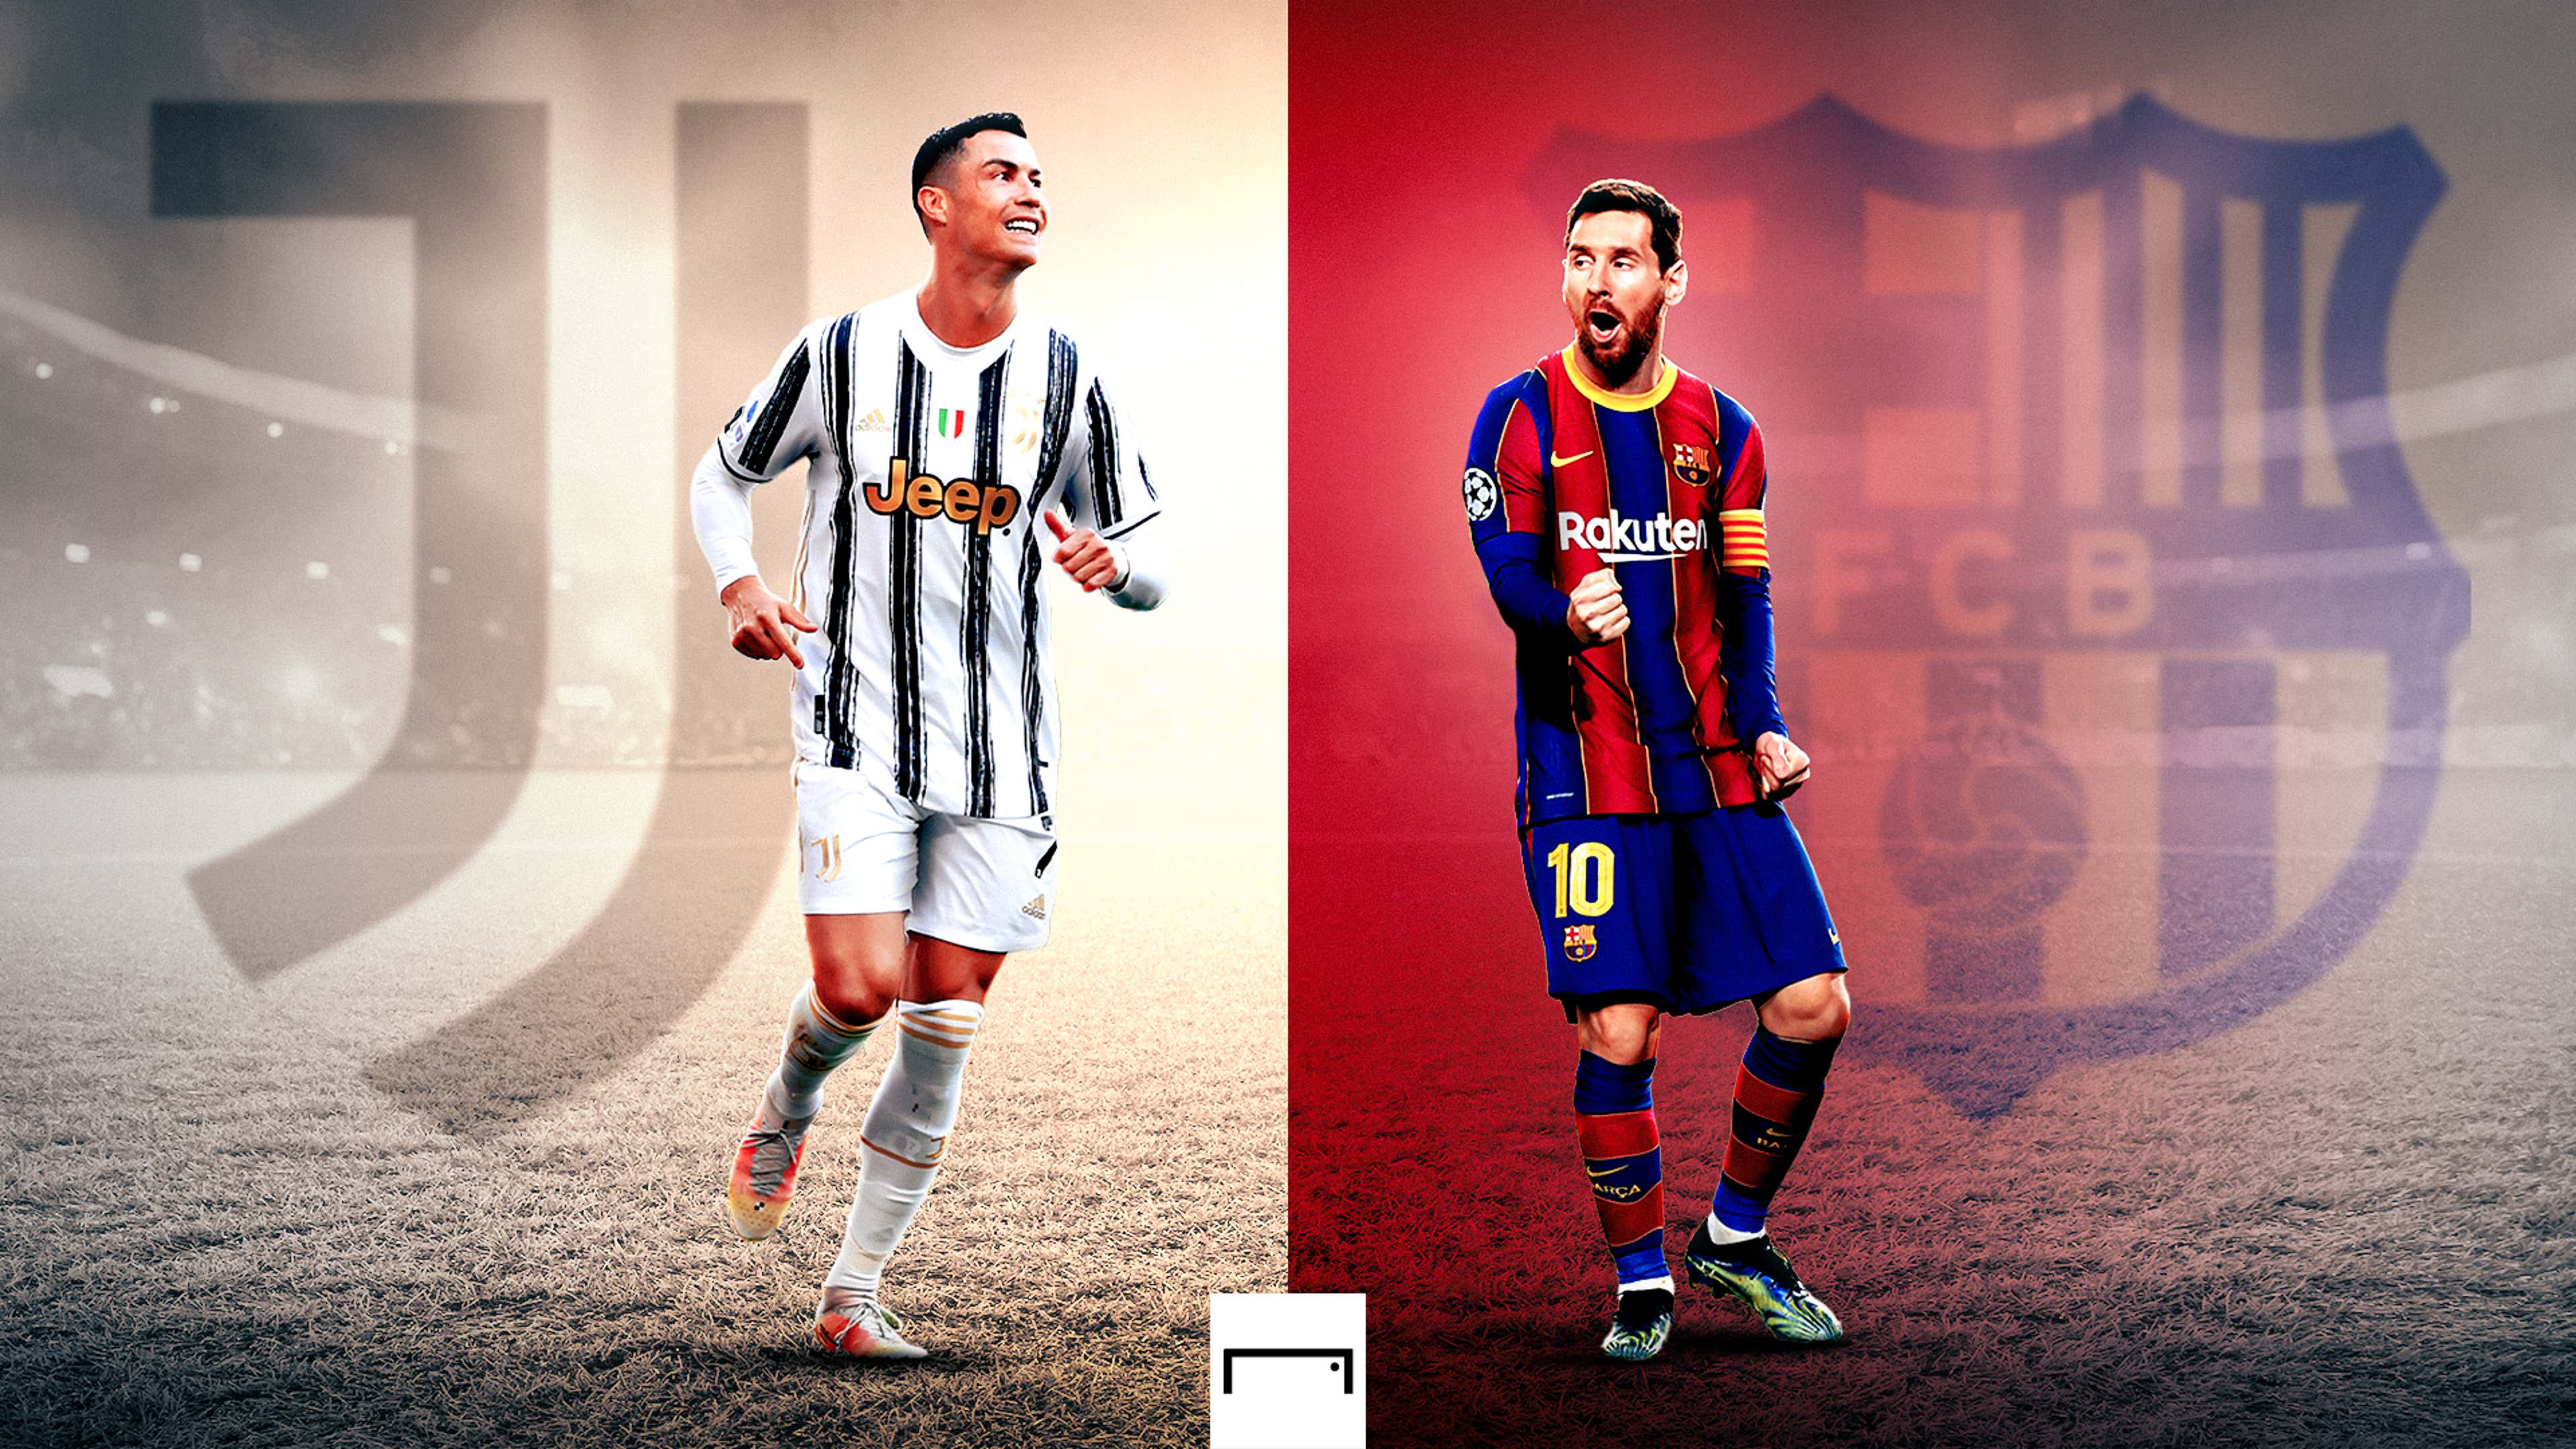 Cristiano Ronaldo vs Lionel Messi - Who had a better 2021?